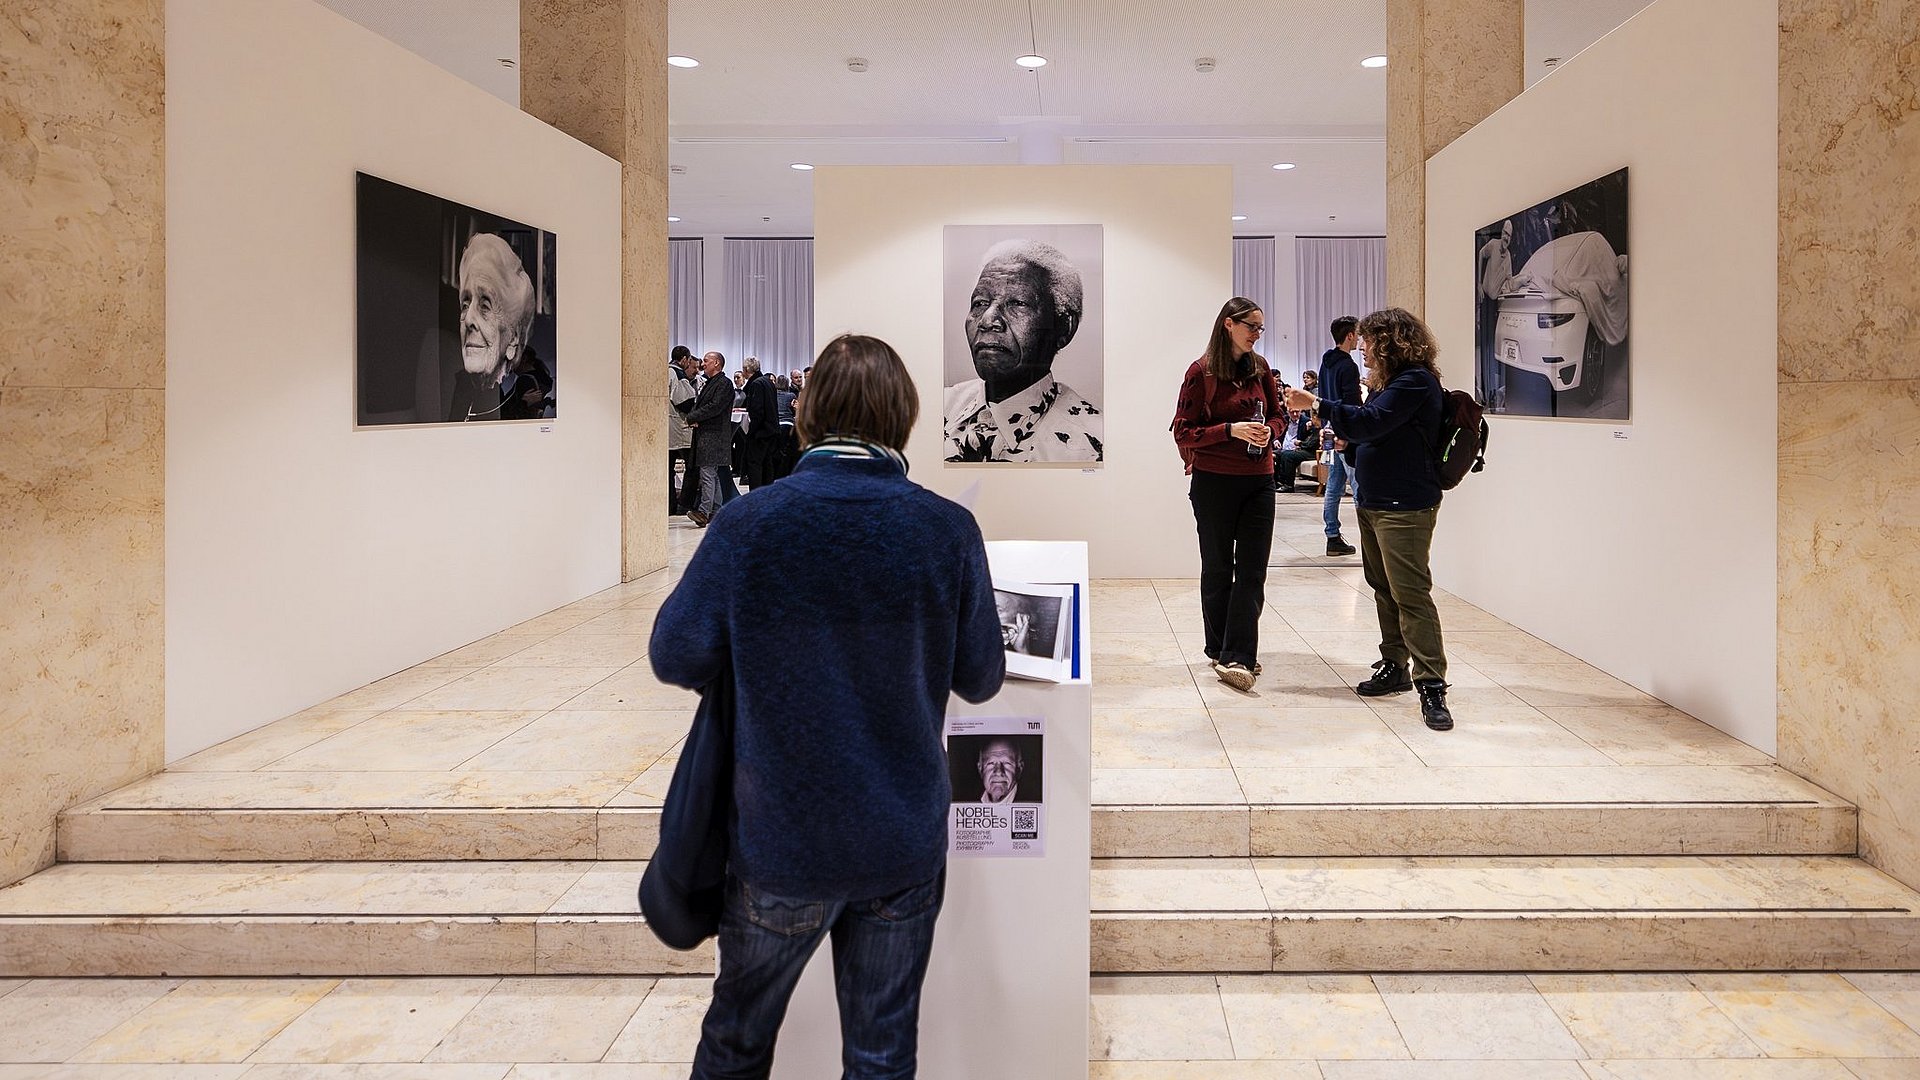 Gäste der Foto-Ausstellung "Nobel Heroes" sehen sich die Fotografien von Peter Badge in der Immatrikulationshalle der TUM an. 